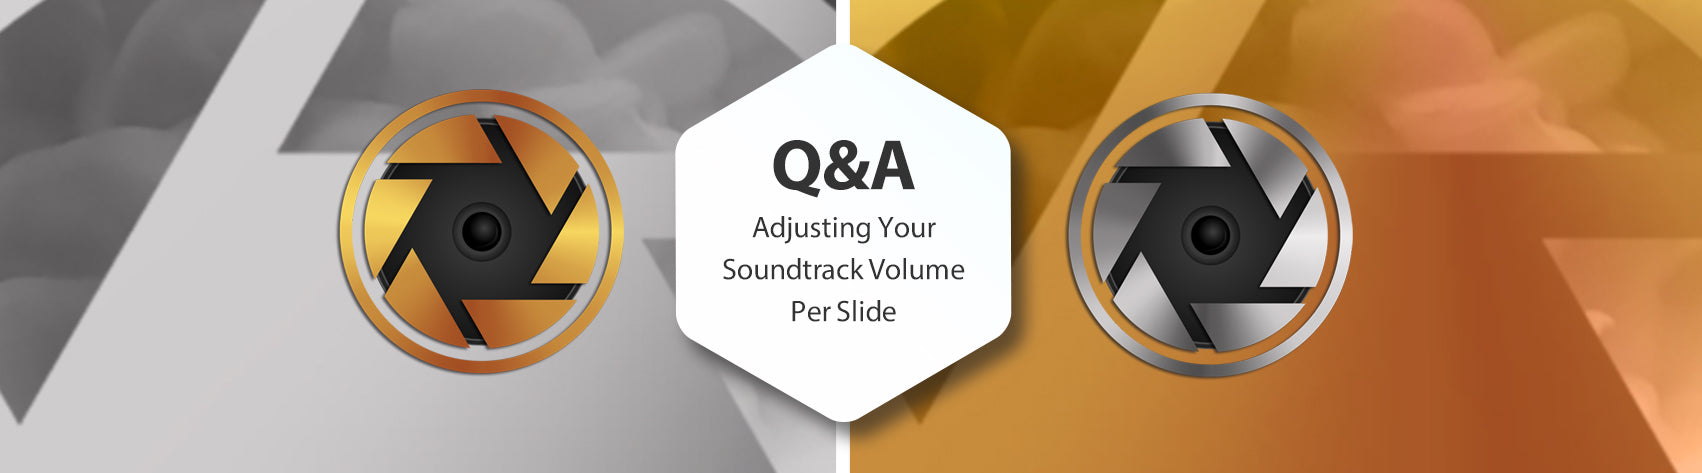 Q&A - Adjusting Your Soundtrack Volume Per Slide